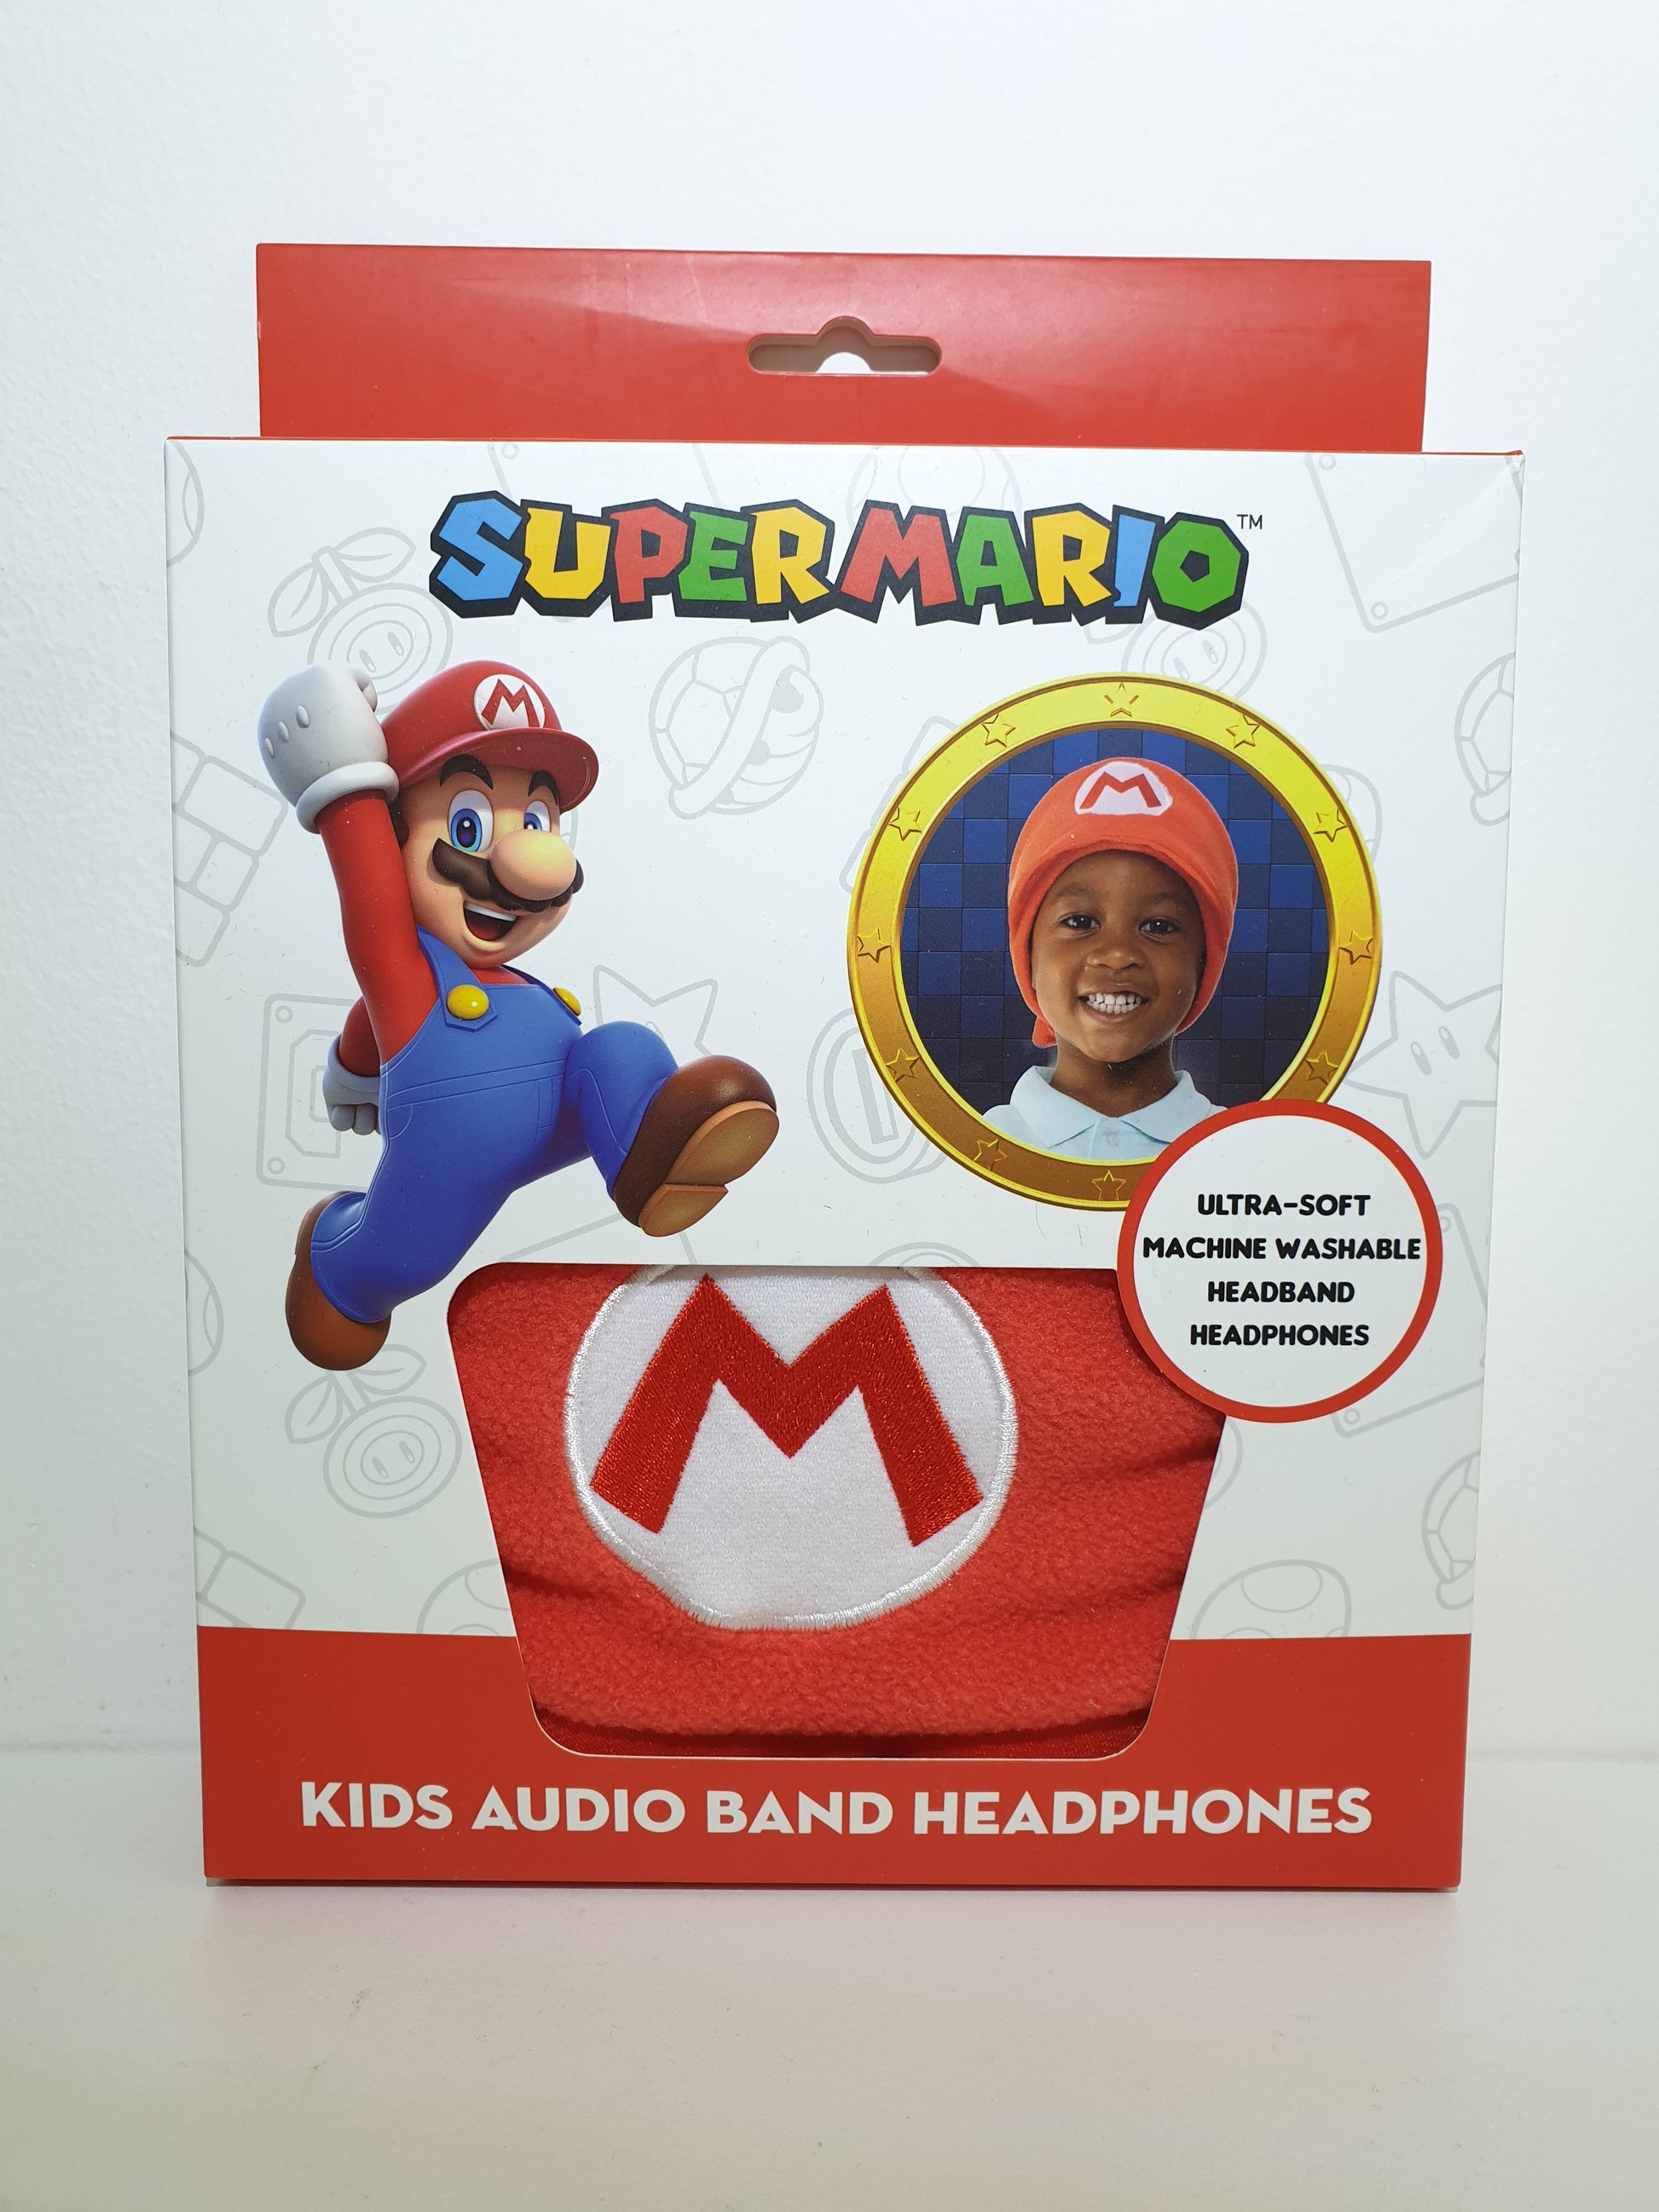 Casque audio filaire Super Mario pour enfant, Casques filaires